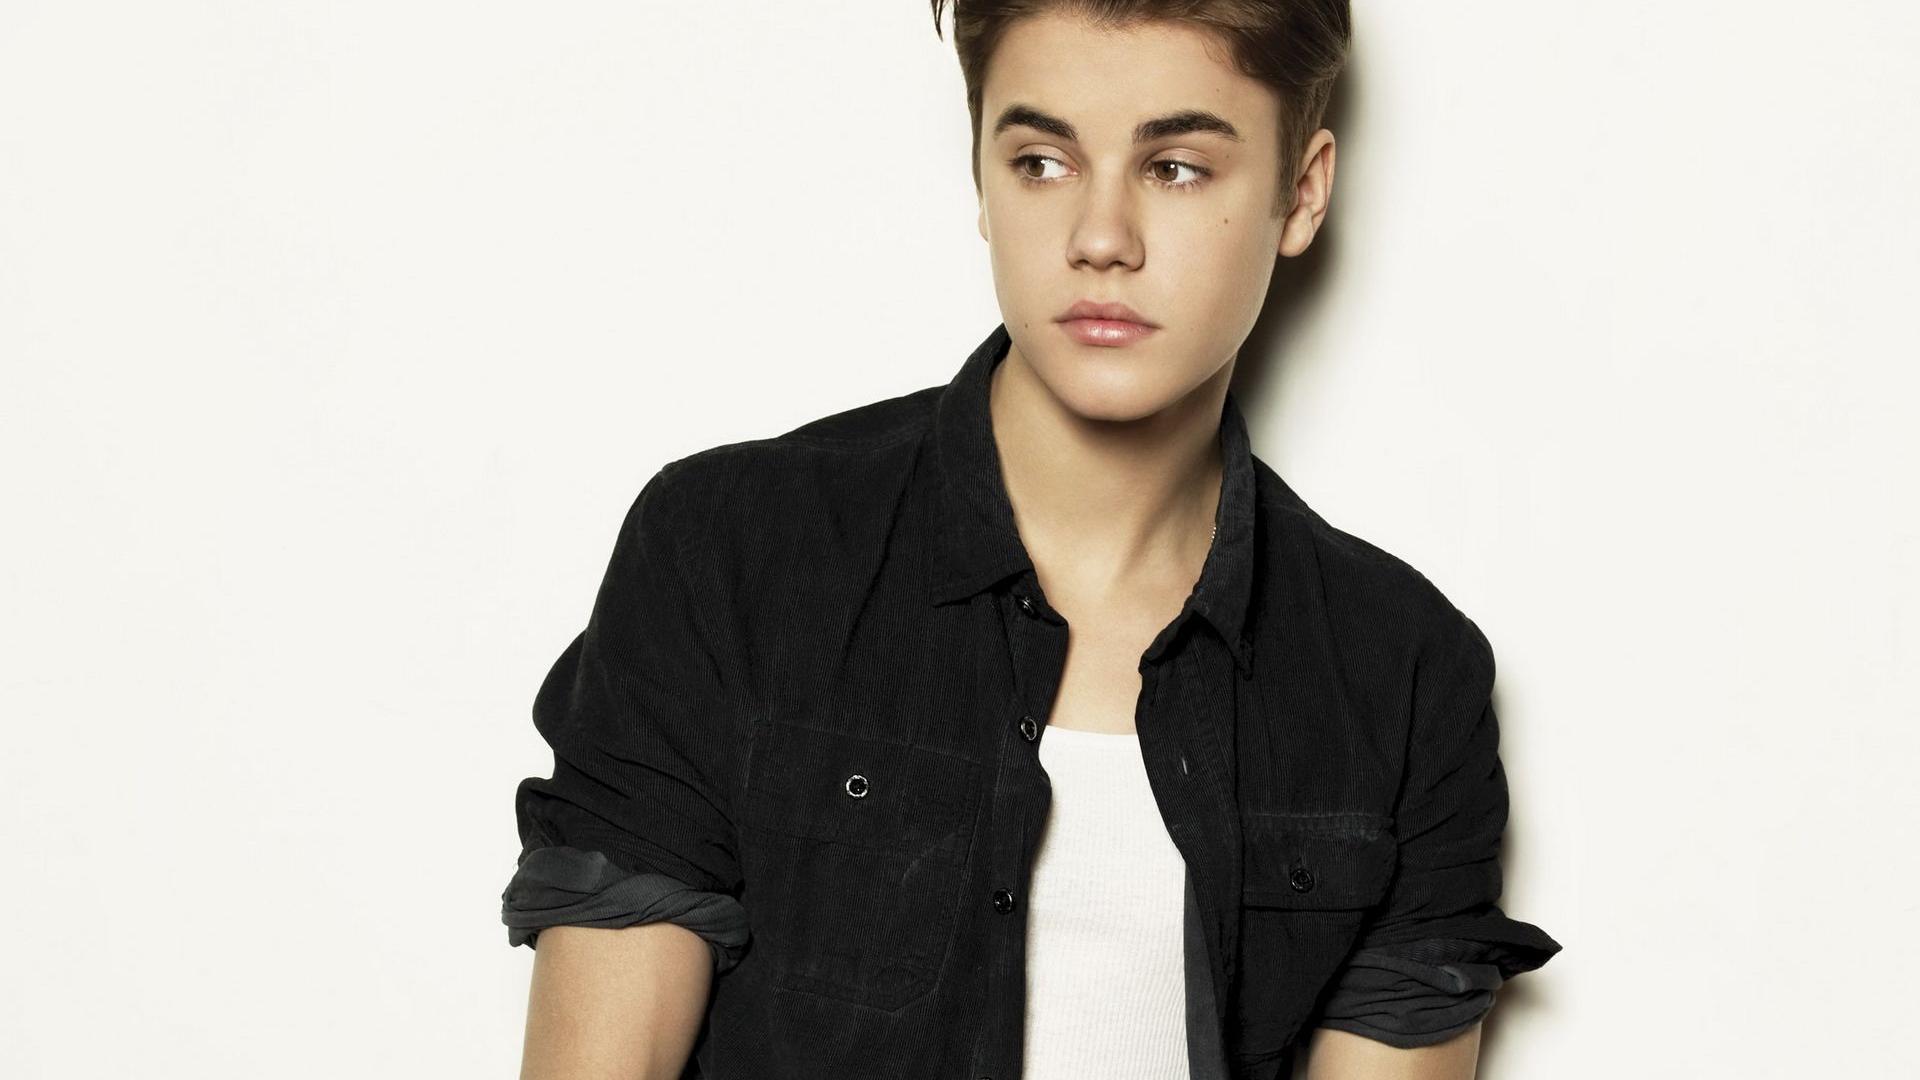 Justin Bieber Wallpaper HD 2015